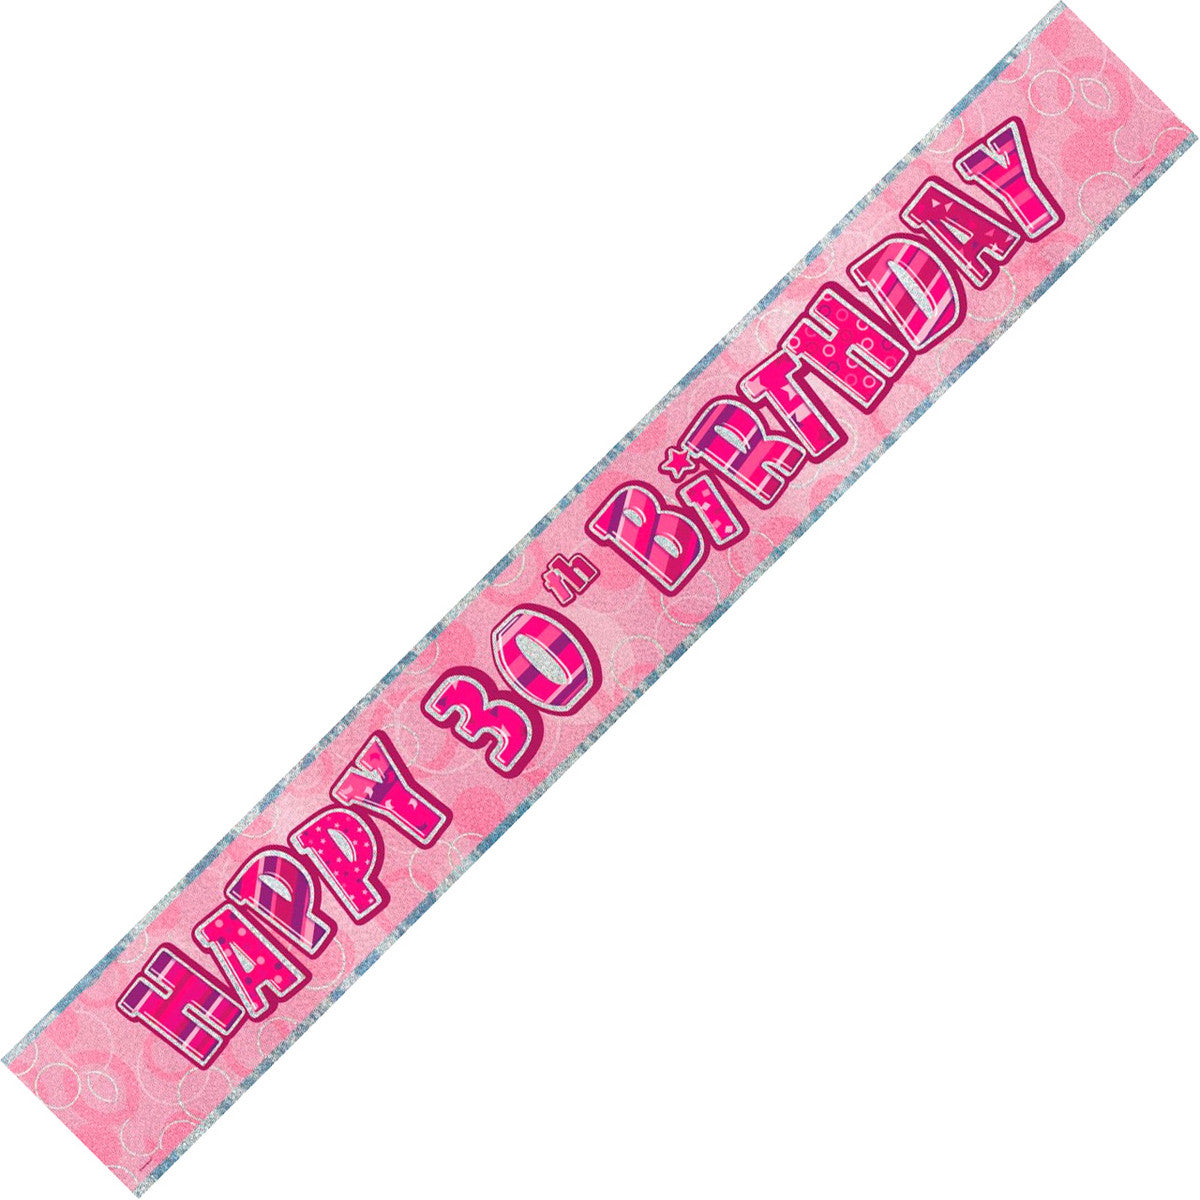 Banner - Happy 30th Birthday Glitz Pink Foil Banner